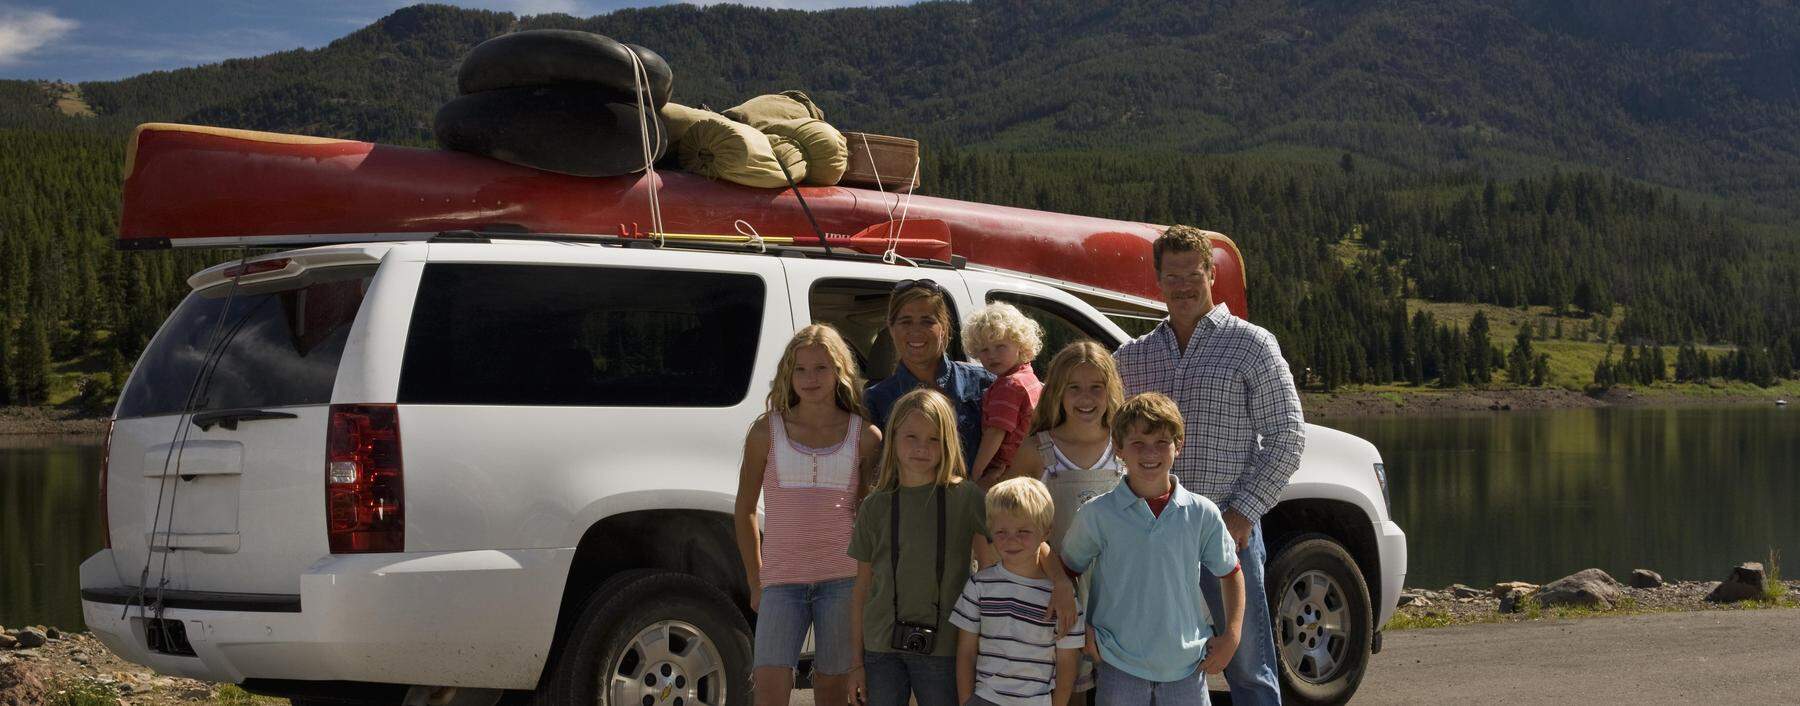 Idylle eines Roadtrips: US-Familie vor ihrem vollgepackten Full-size-SUV. 